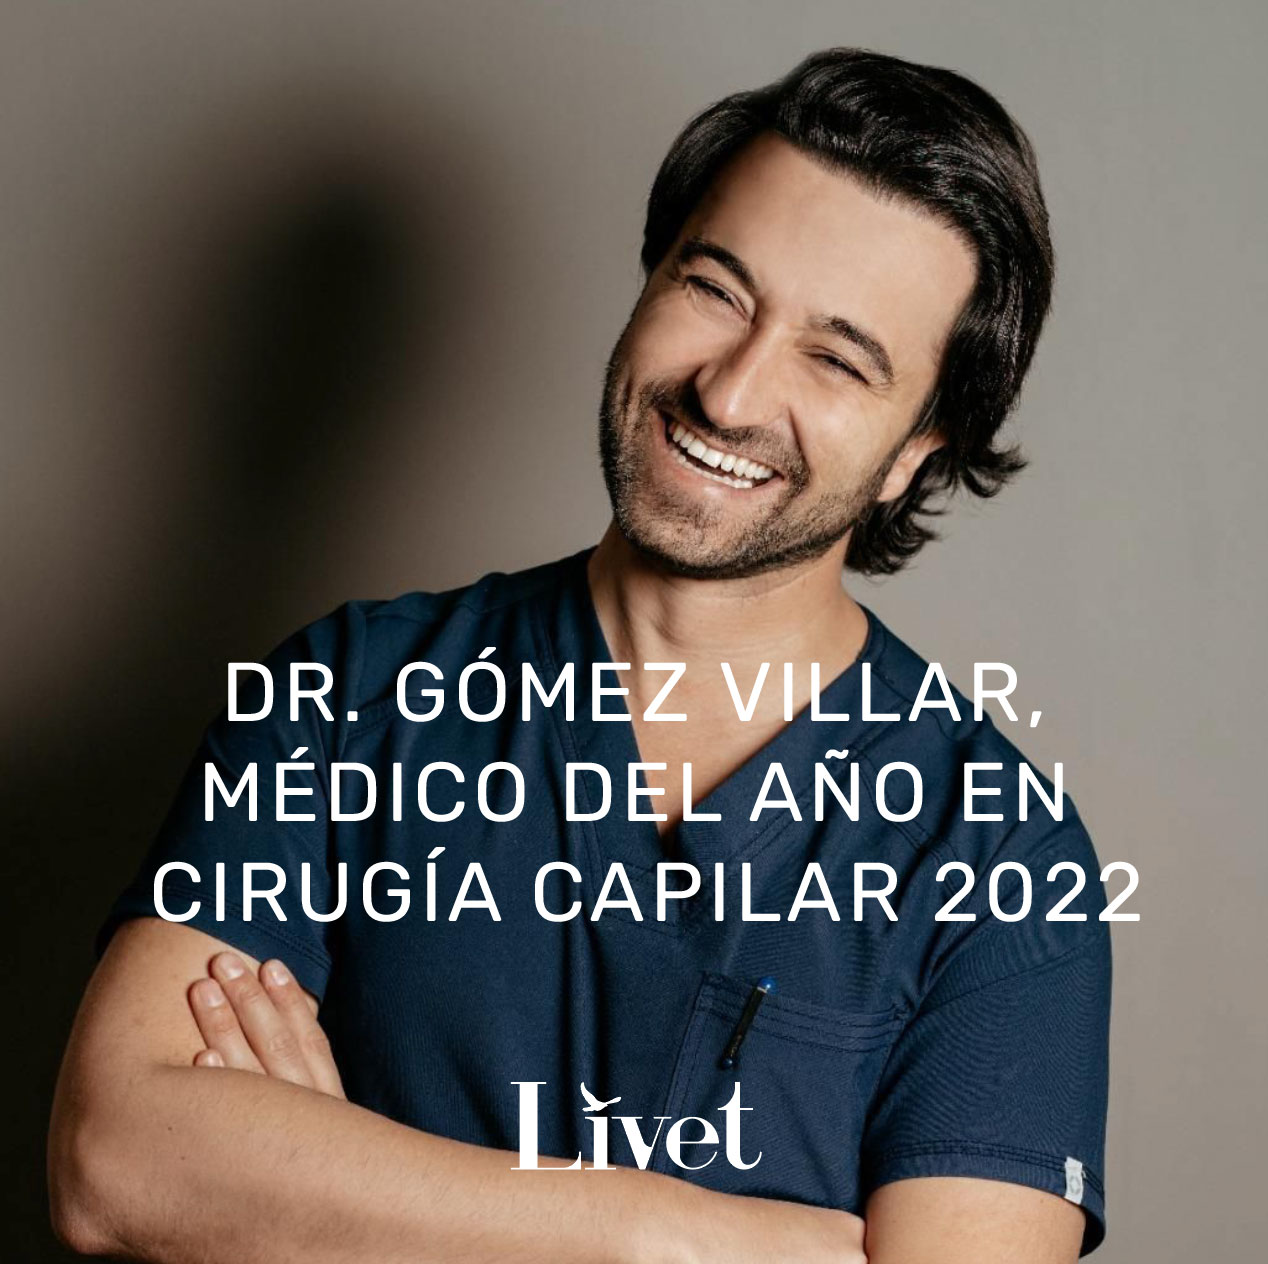 Dr. Gómez Villar especialista en cirugía capilar